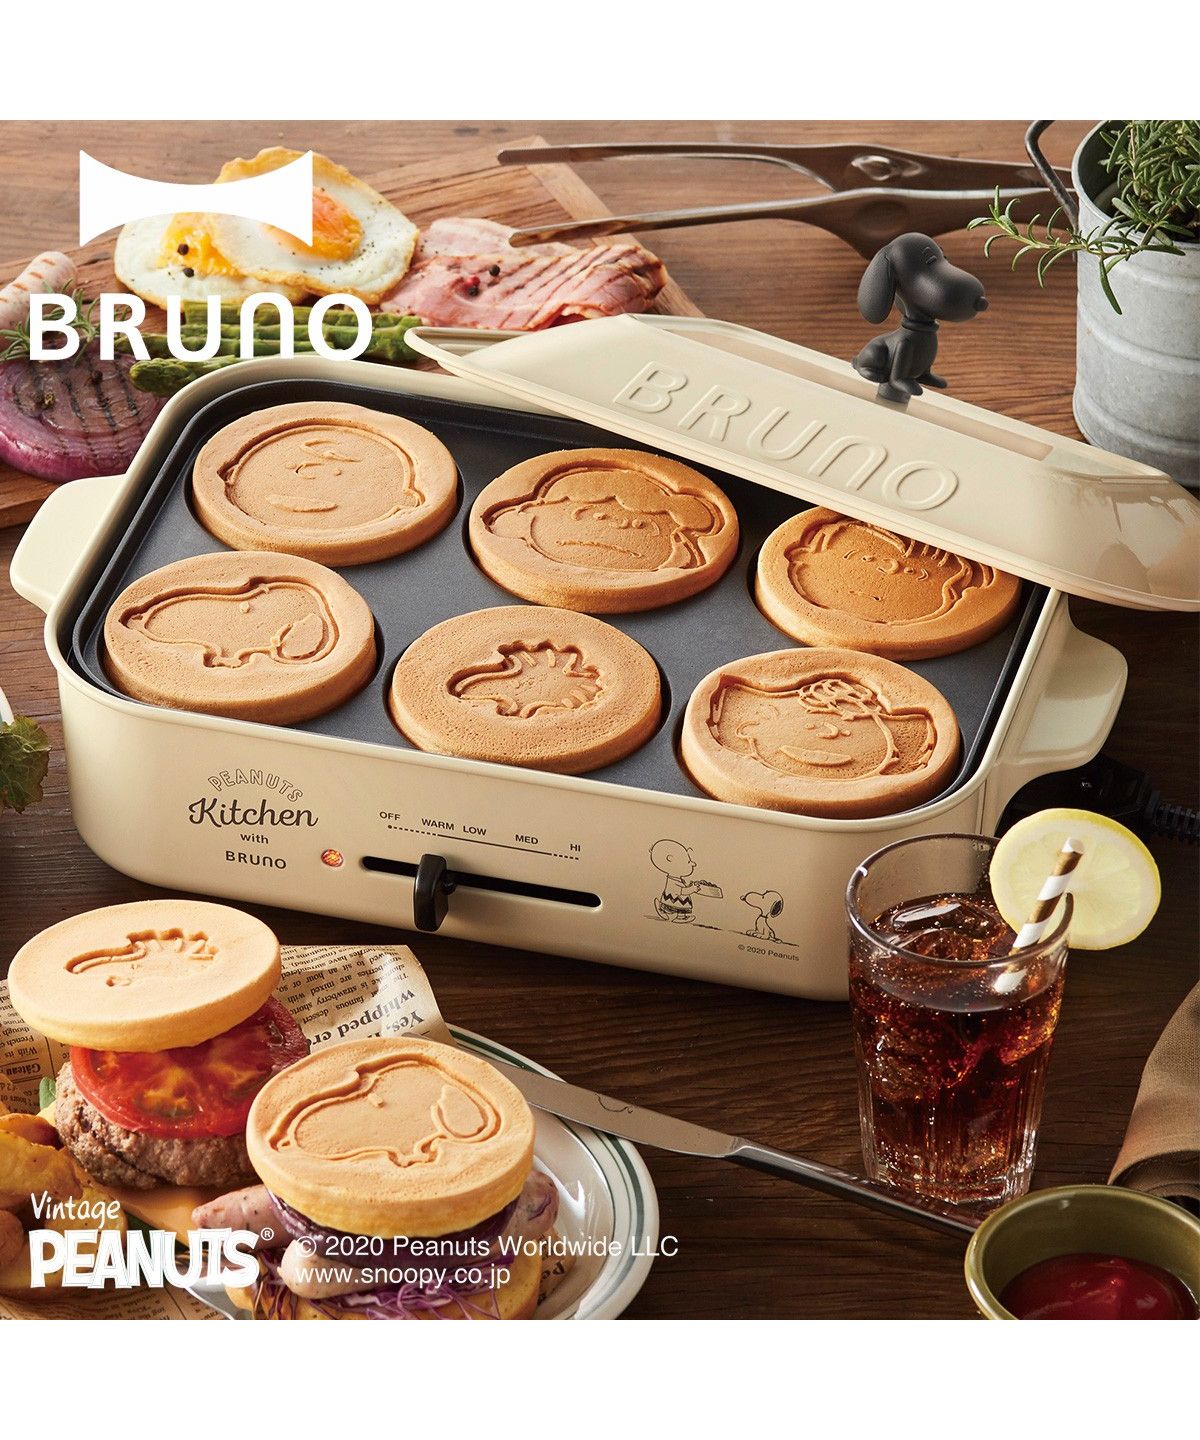 BRUNO ブルーノ ホットプレート スヌーピー たこ焼き器 焼肉 パンケーキ コンパクト グッズ 平面 電気式 ヒーター式 1200W 小型 小さい  ホワイト